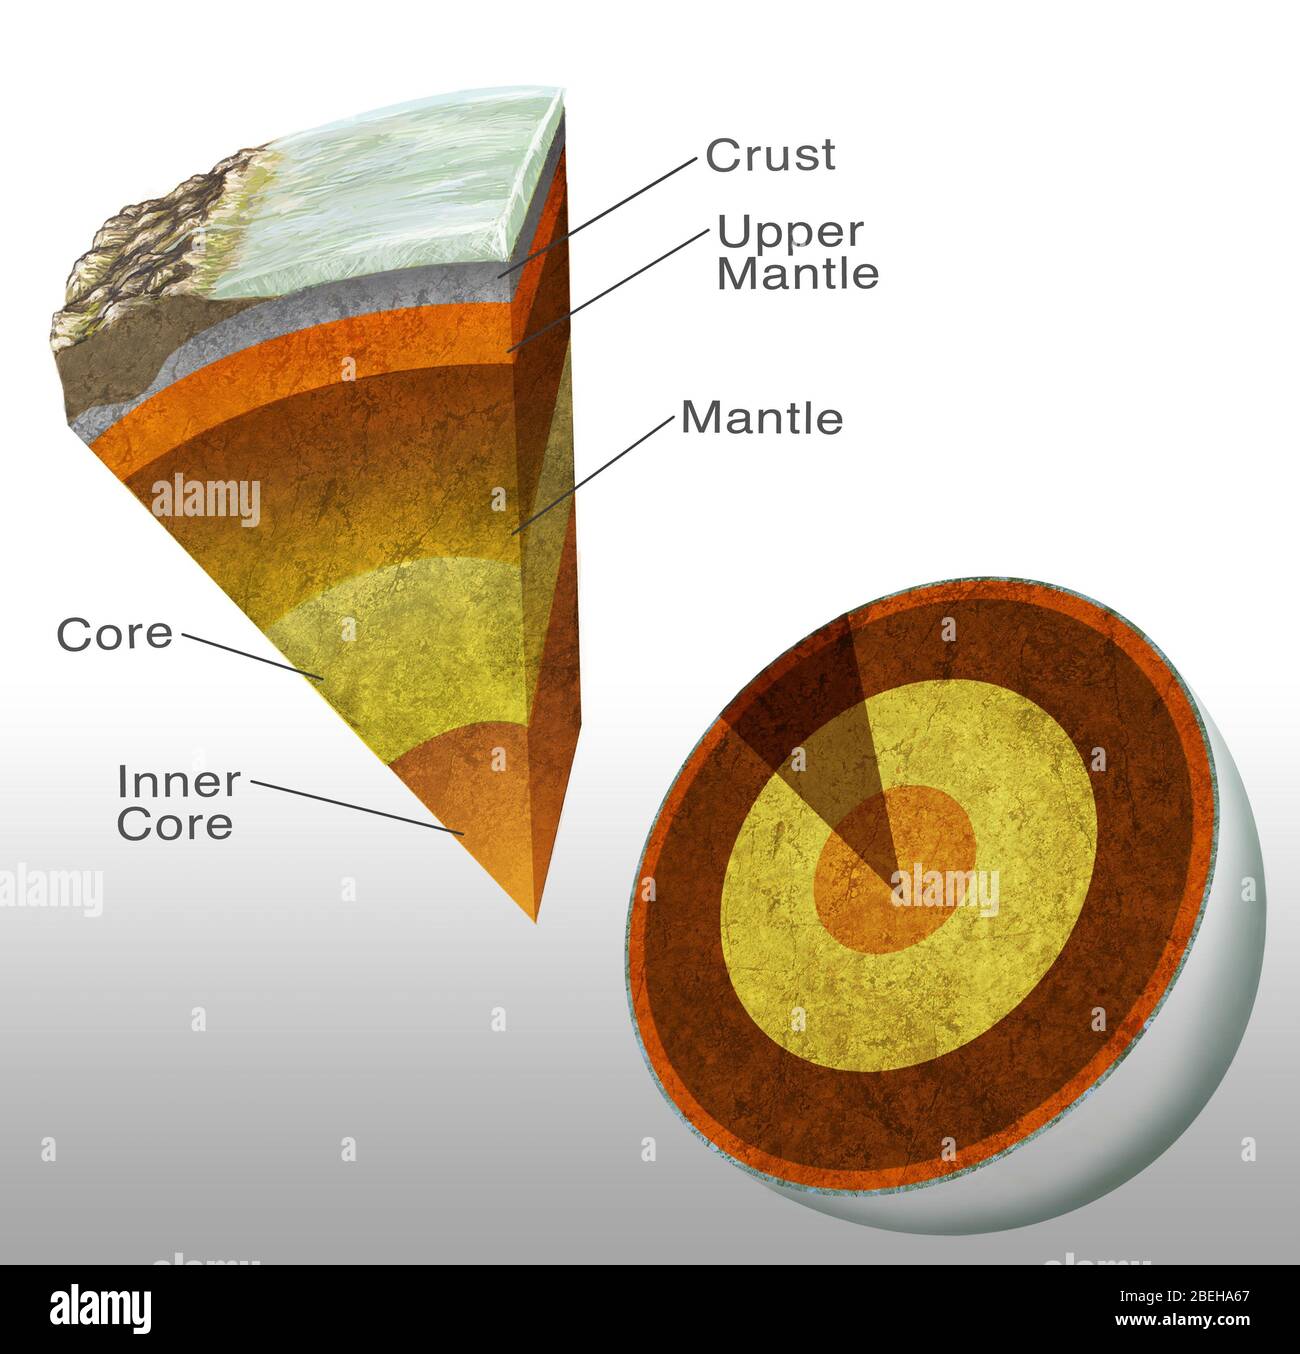 La struttura della Terra. Opere d'arte tagliate della struttura interna della Terra. Sotto la crosta terrestre, una zona di roccia quasi fusa chiamata mantello si estende fino a 2900 chilometri (km). Sotto il mantello si trova il nucleo in nichel-ferro. Si trova a circa 7000 km di distanza. Il nucleo esterno (giallo) è fuso e il nucleo interno (arancione) è solido. La temperatura al nucleo può essere superiore a 5000 gradi Celsius. Foto Stock